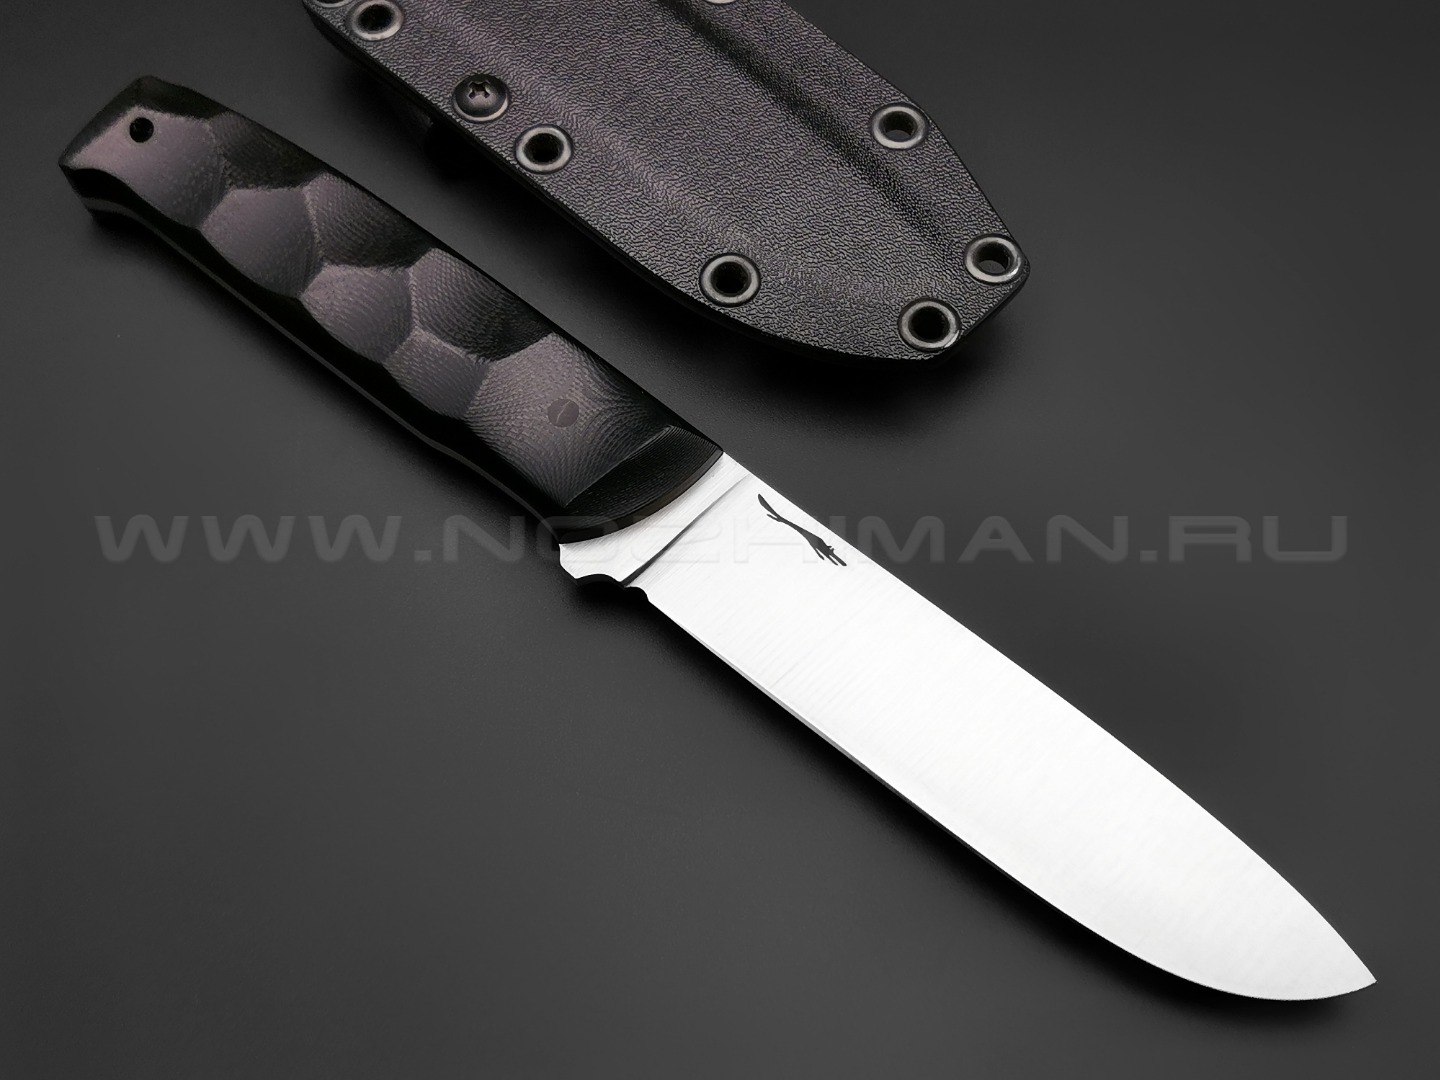 Волчий Век нож Wolfkniven сталь Niolox WA, рукоять G10 black